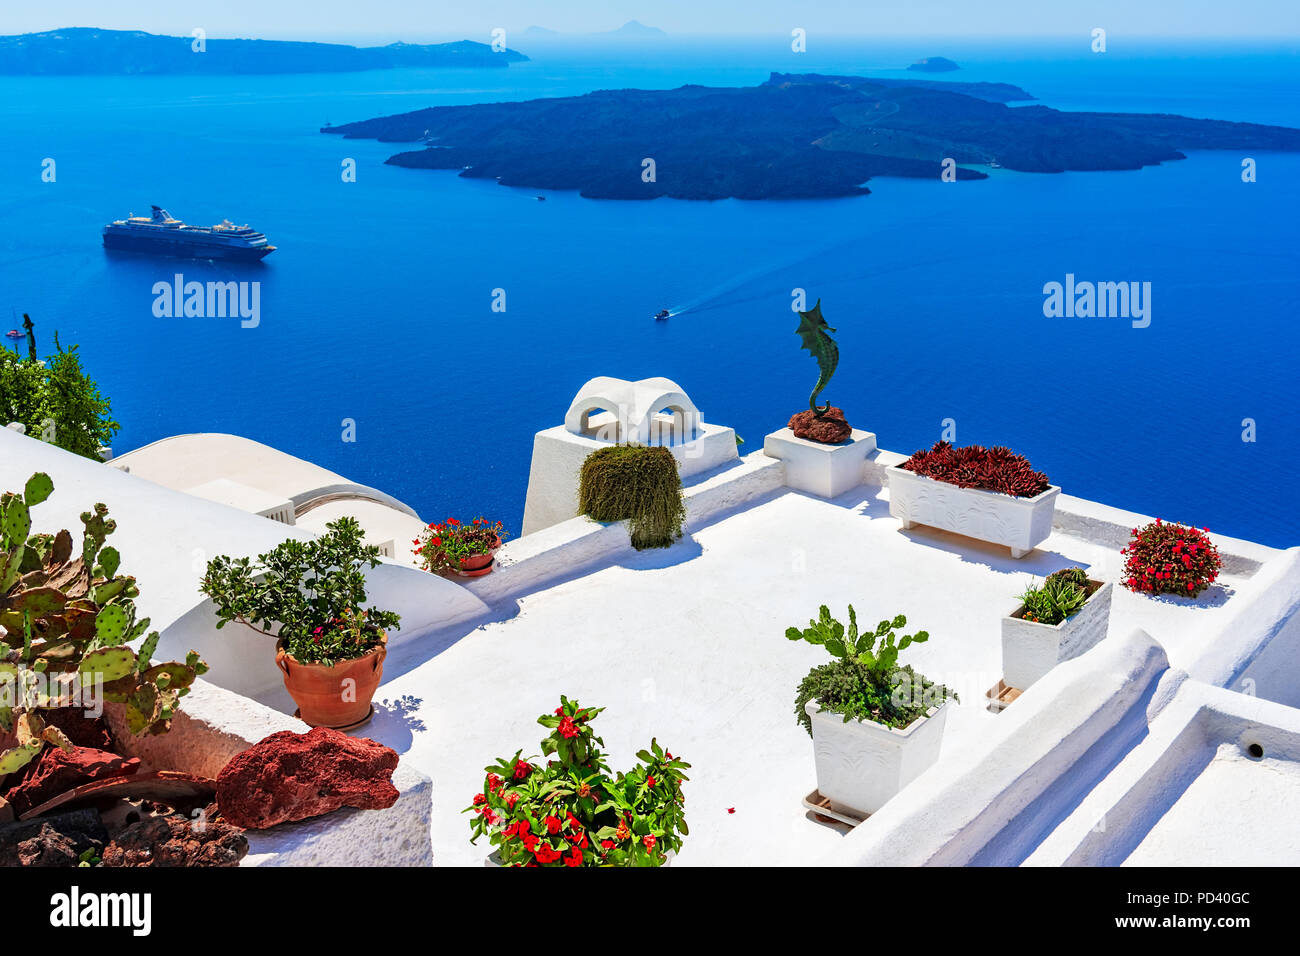 L'île de Santorin, Grèce : Vue détaillée d'une terrasse décorée avec des fleurs sur la caldera Caldera Banque D'Images